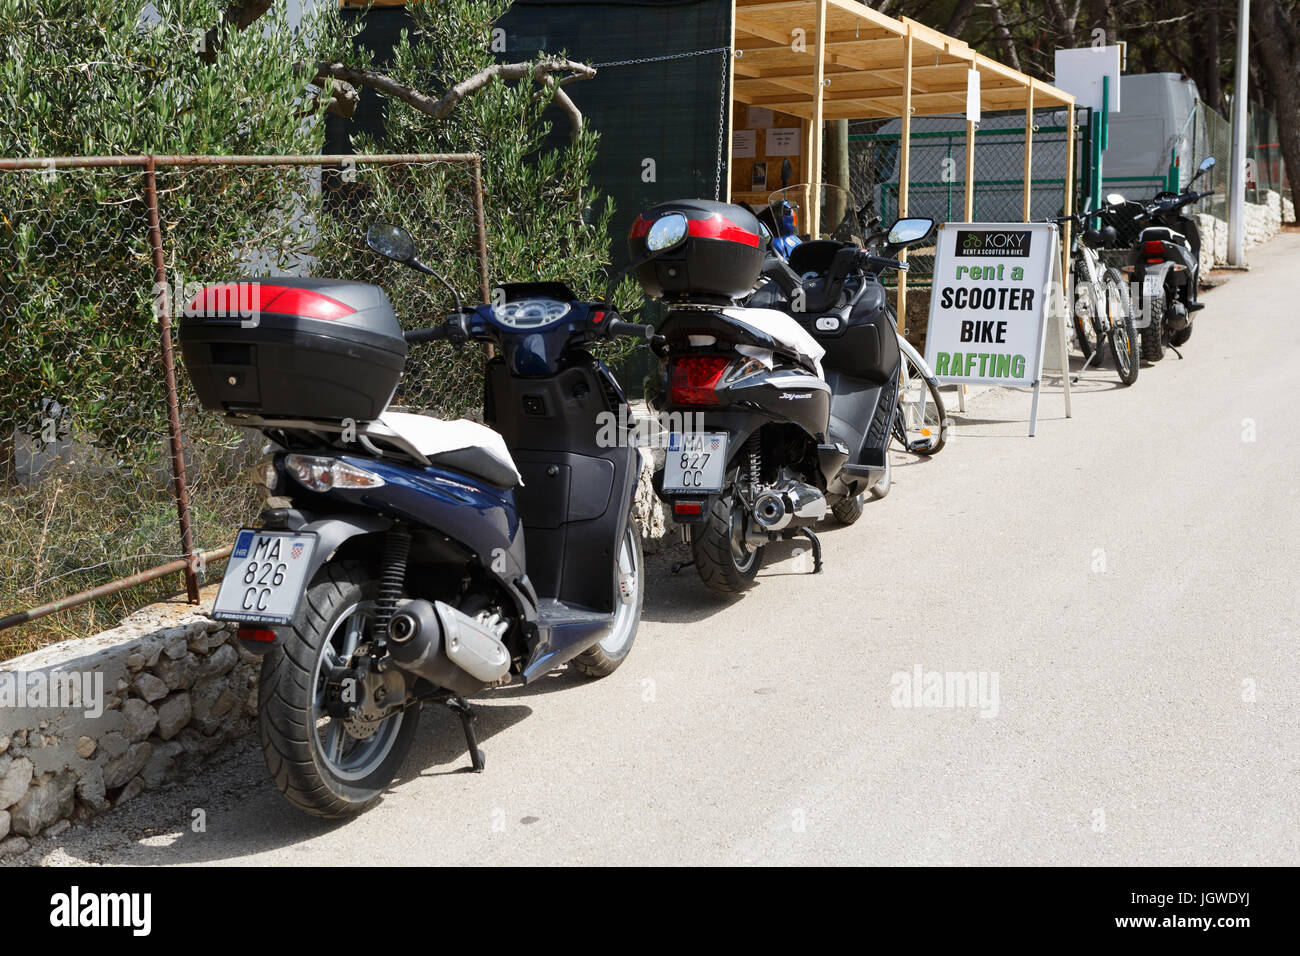 MAKARSKA RIVIERA, Kroatien - 20. Juni 2017: Scooter Fahrräder  Verleih-Station. Nehmen Sie einen Roller für billige Fahrt. Wählen Sie  Motorrad zu mieten Stockfotografie - Alamy